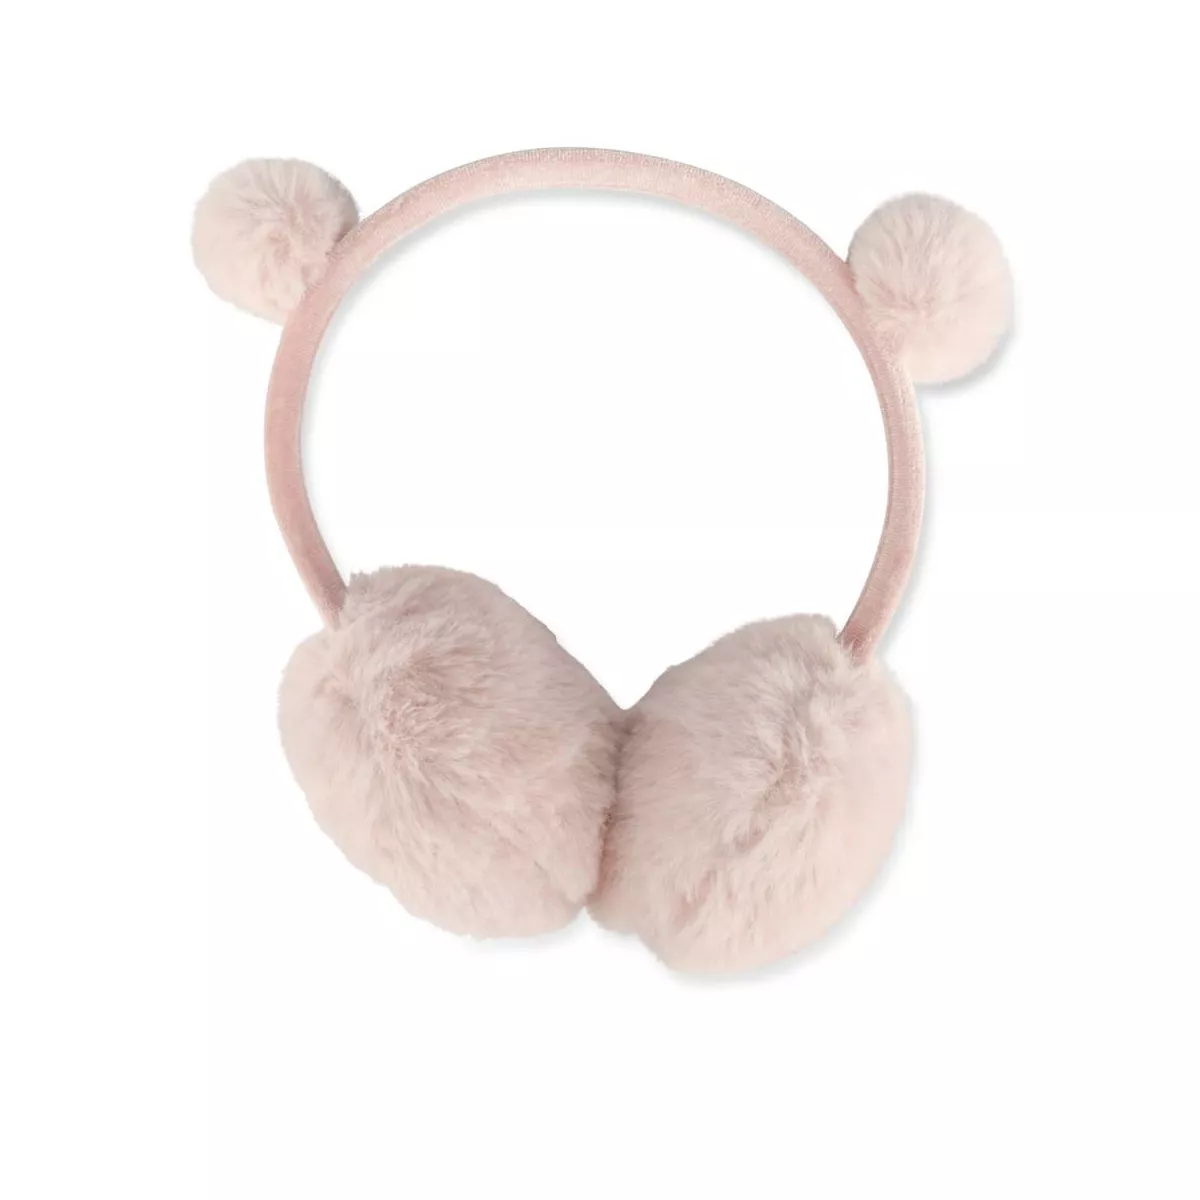 Cache oreille, headband bébé rose, accessoire d'hiver,bandeau